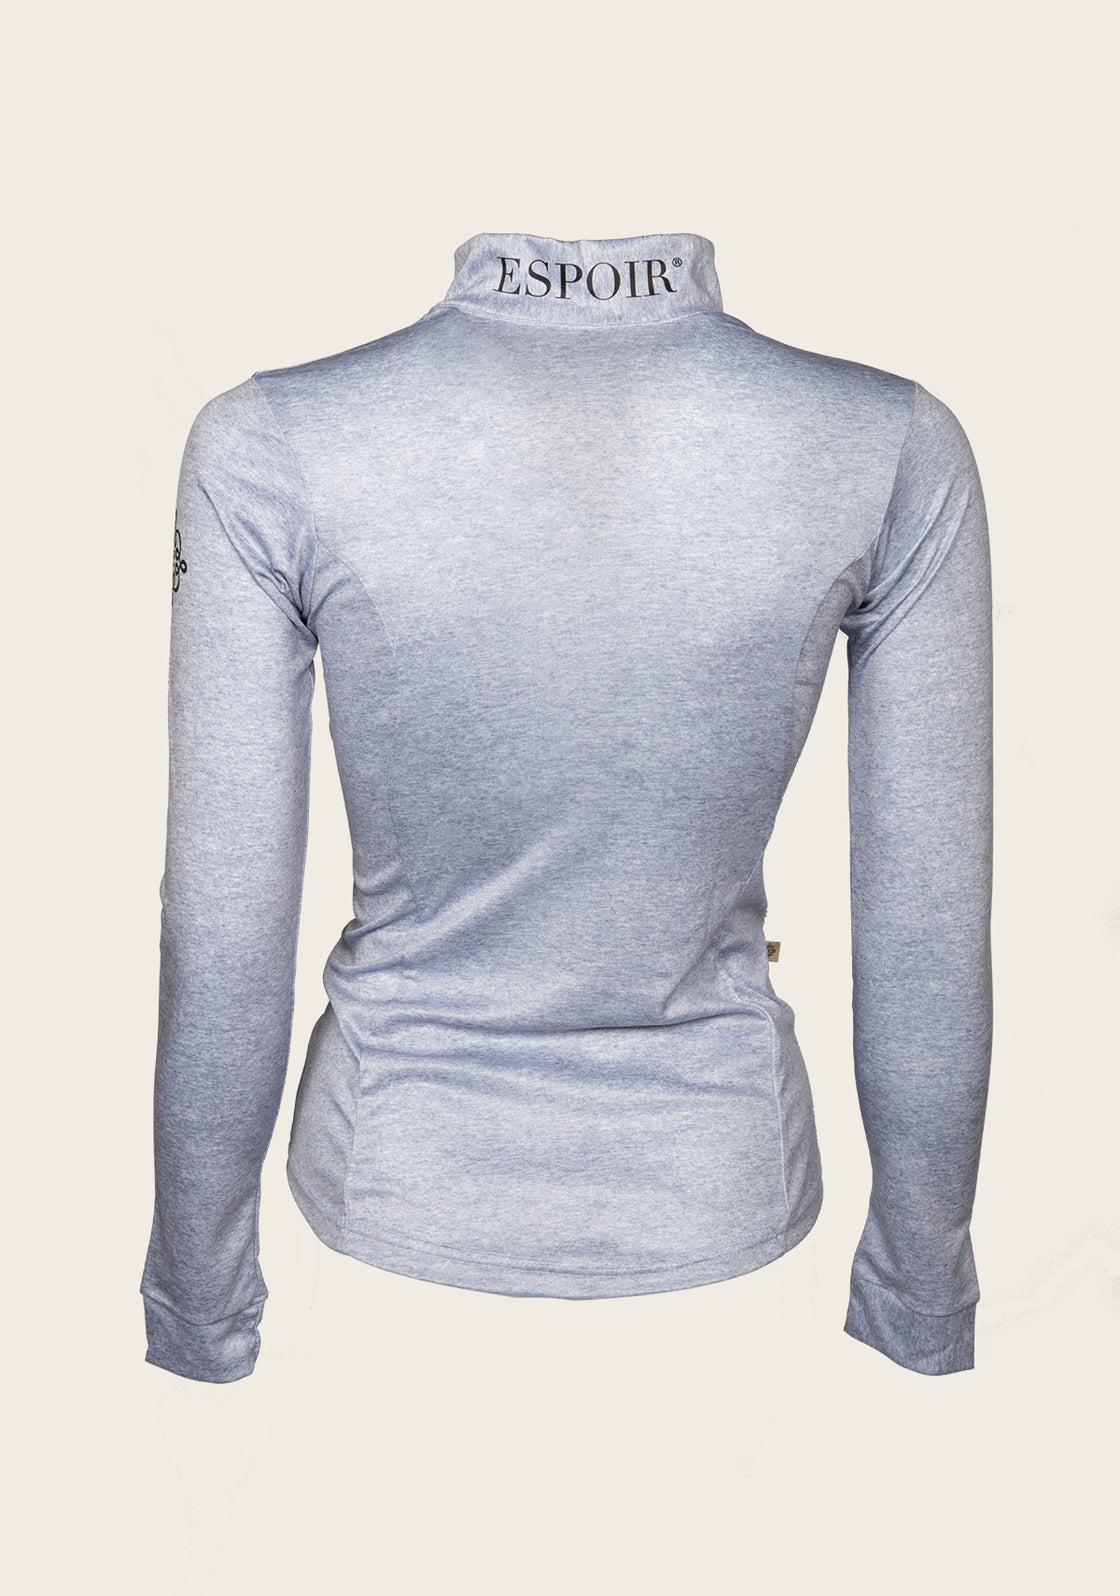 Espoir Lumiere Eternal Collection Melange Grey Quarter Zip Sun Shirt